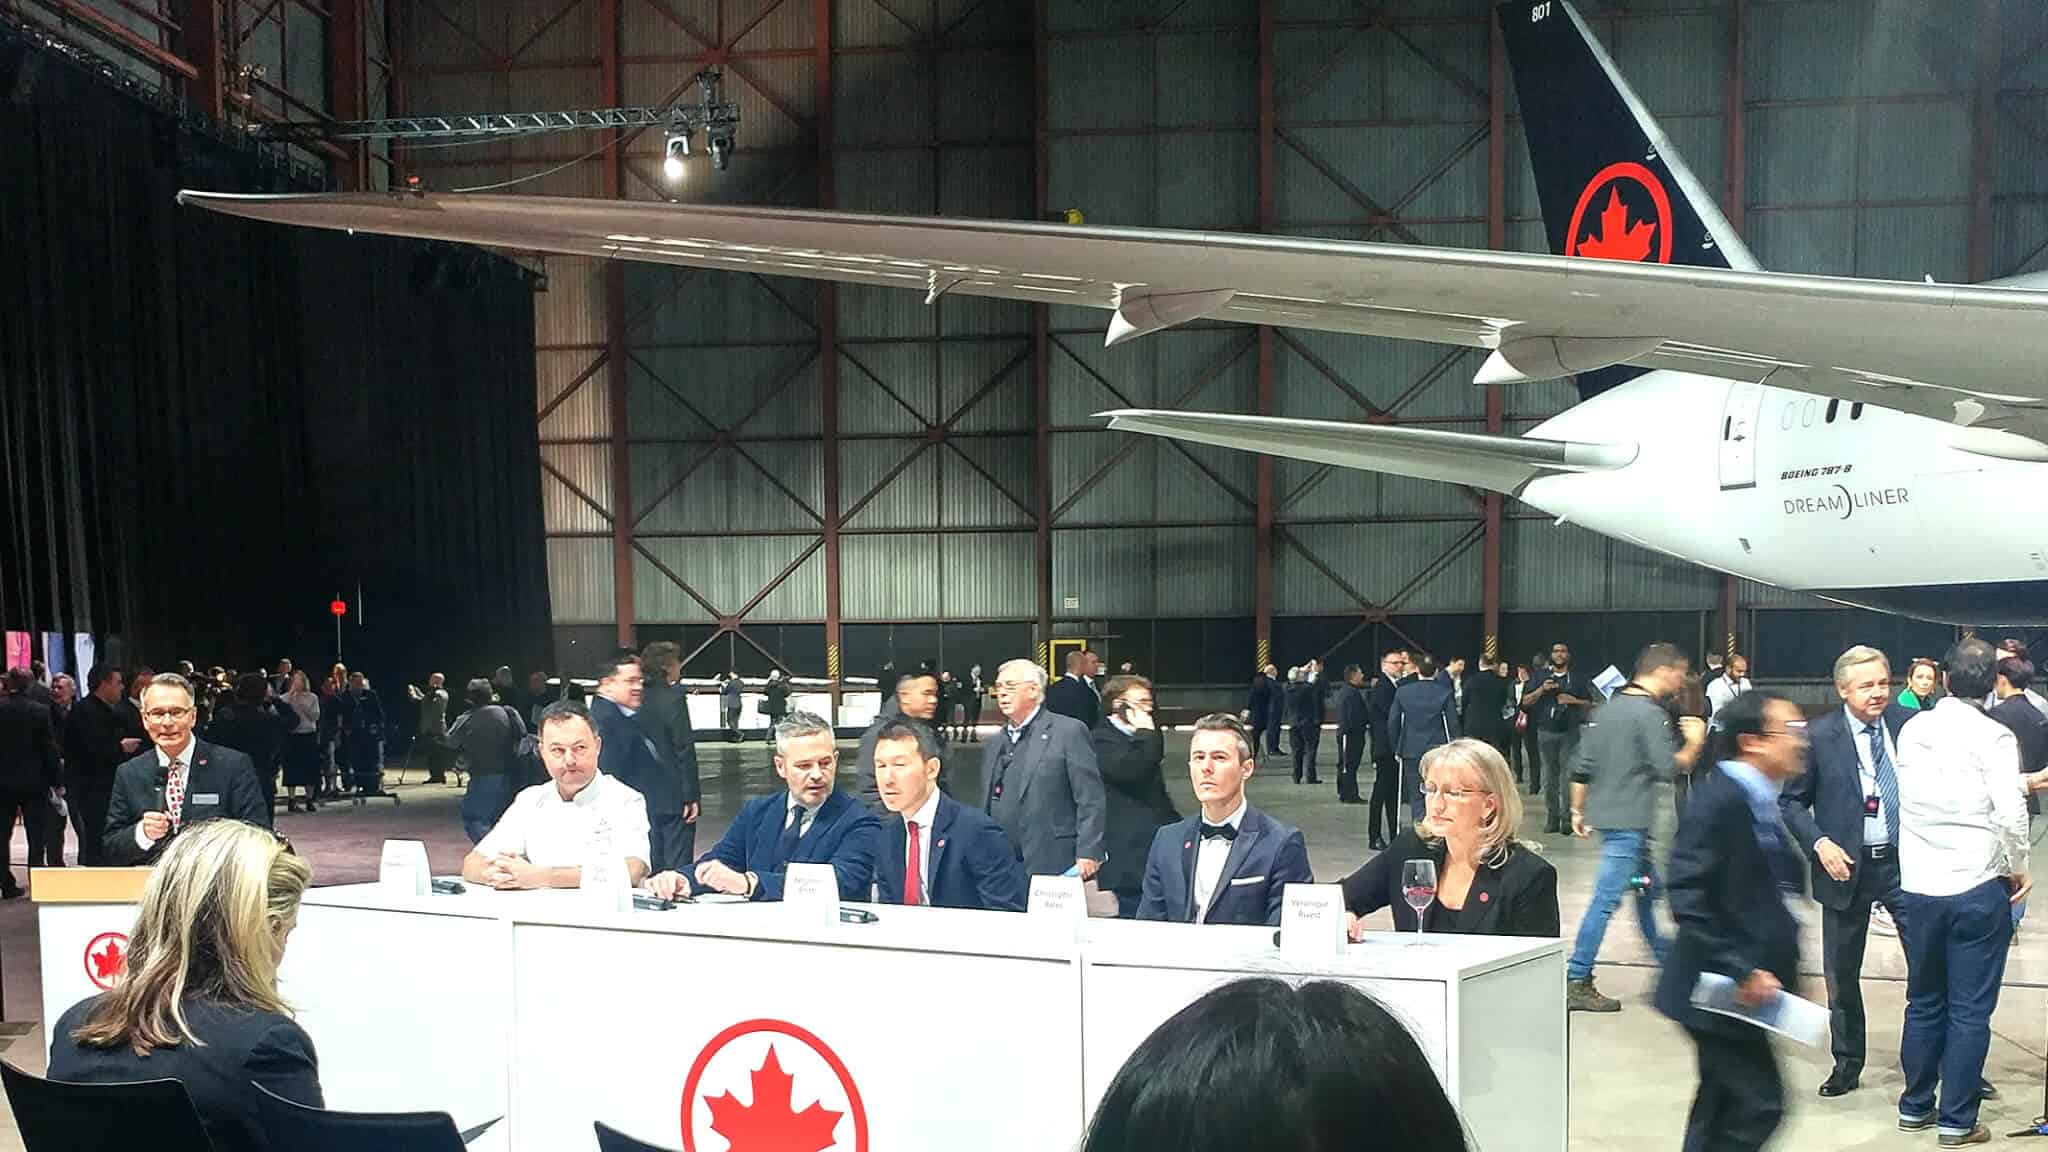 Air Canada Reveals New Branding - Design Team